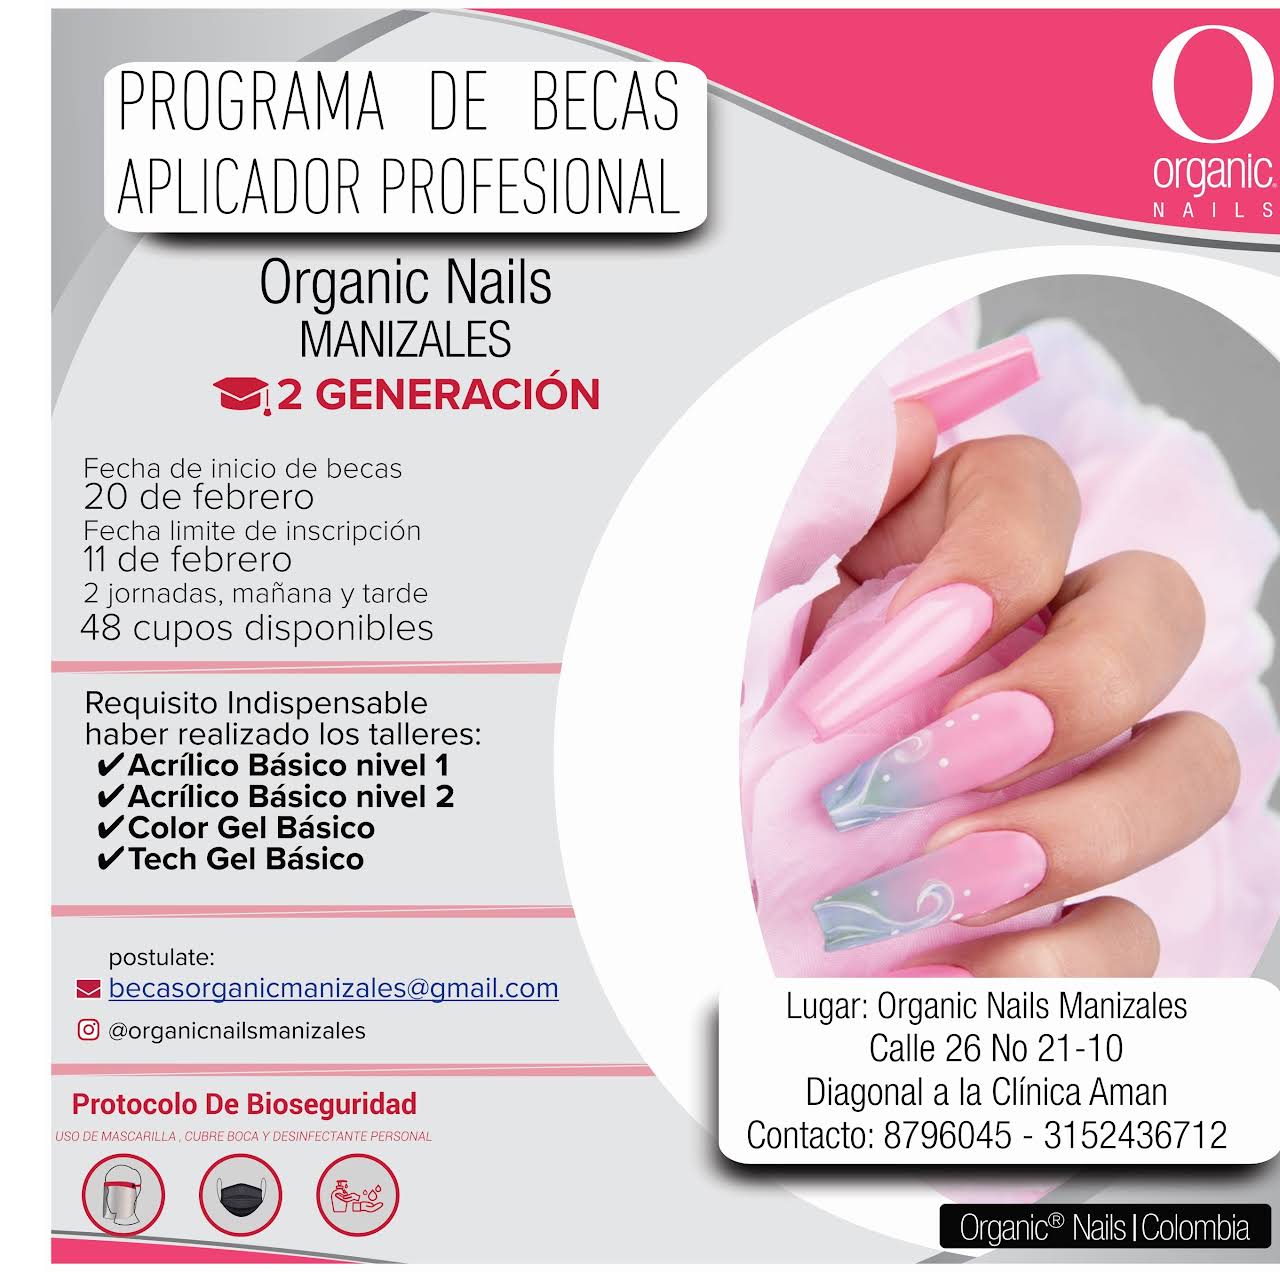 Angela Gómez (Organic Nails Manizales) - Distribución de productos para uñas  acrílicas, en gel, semipermanente de la marca Organic Nails; y productos  para nail art. Manicuría